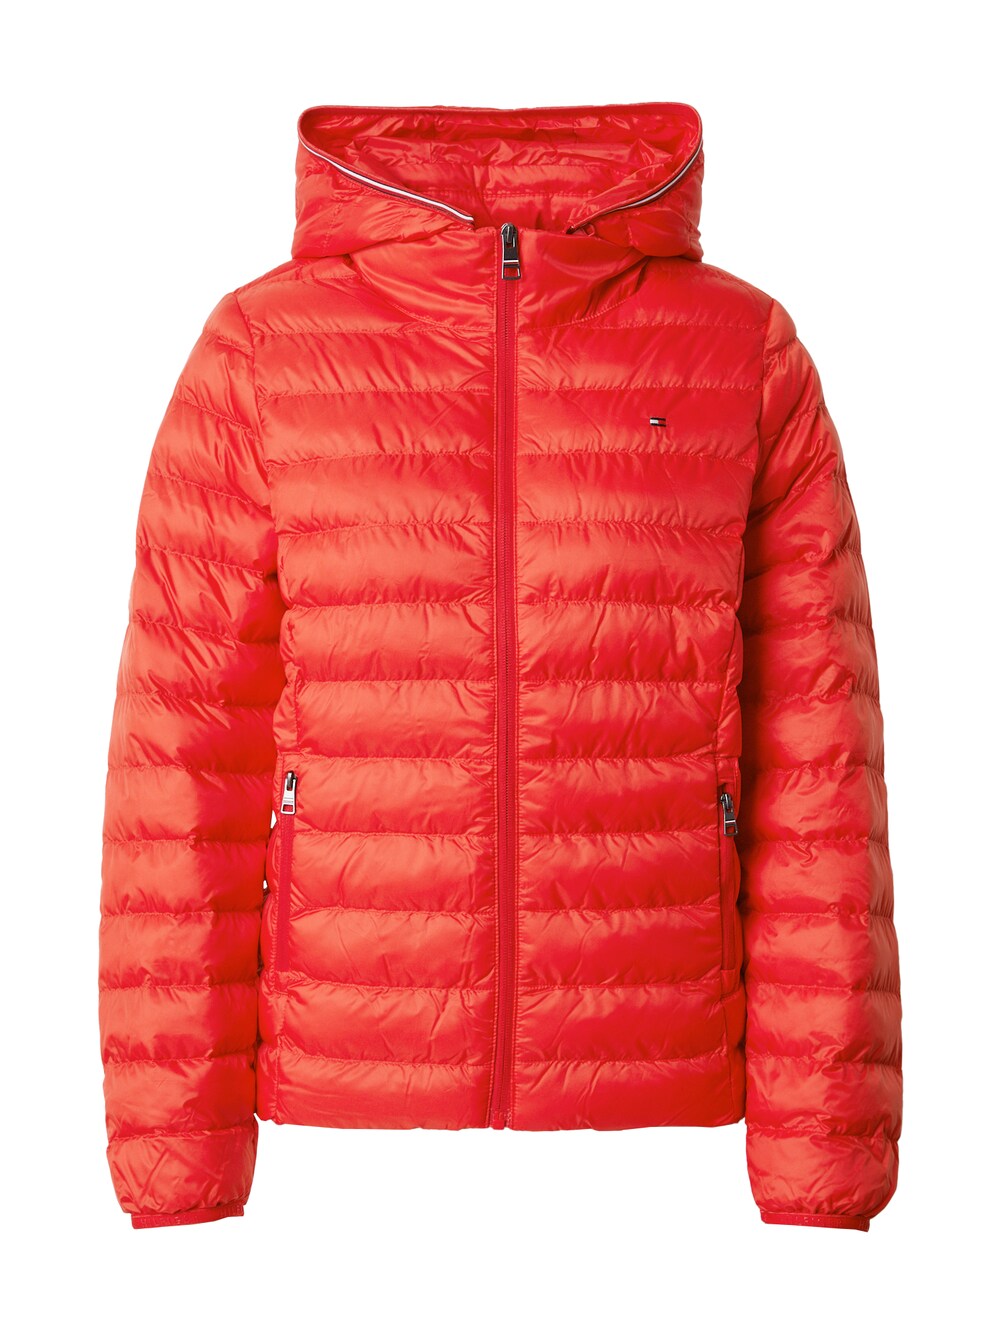 Межсезонная куртка Tommy Hilfiger, оранжево-красный межсезонная куртка superdry оранжево красный